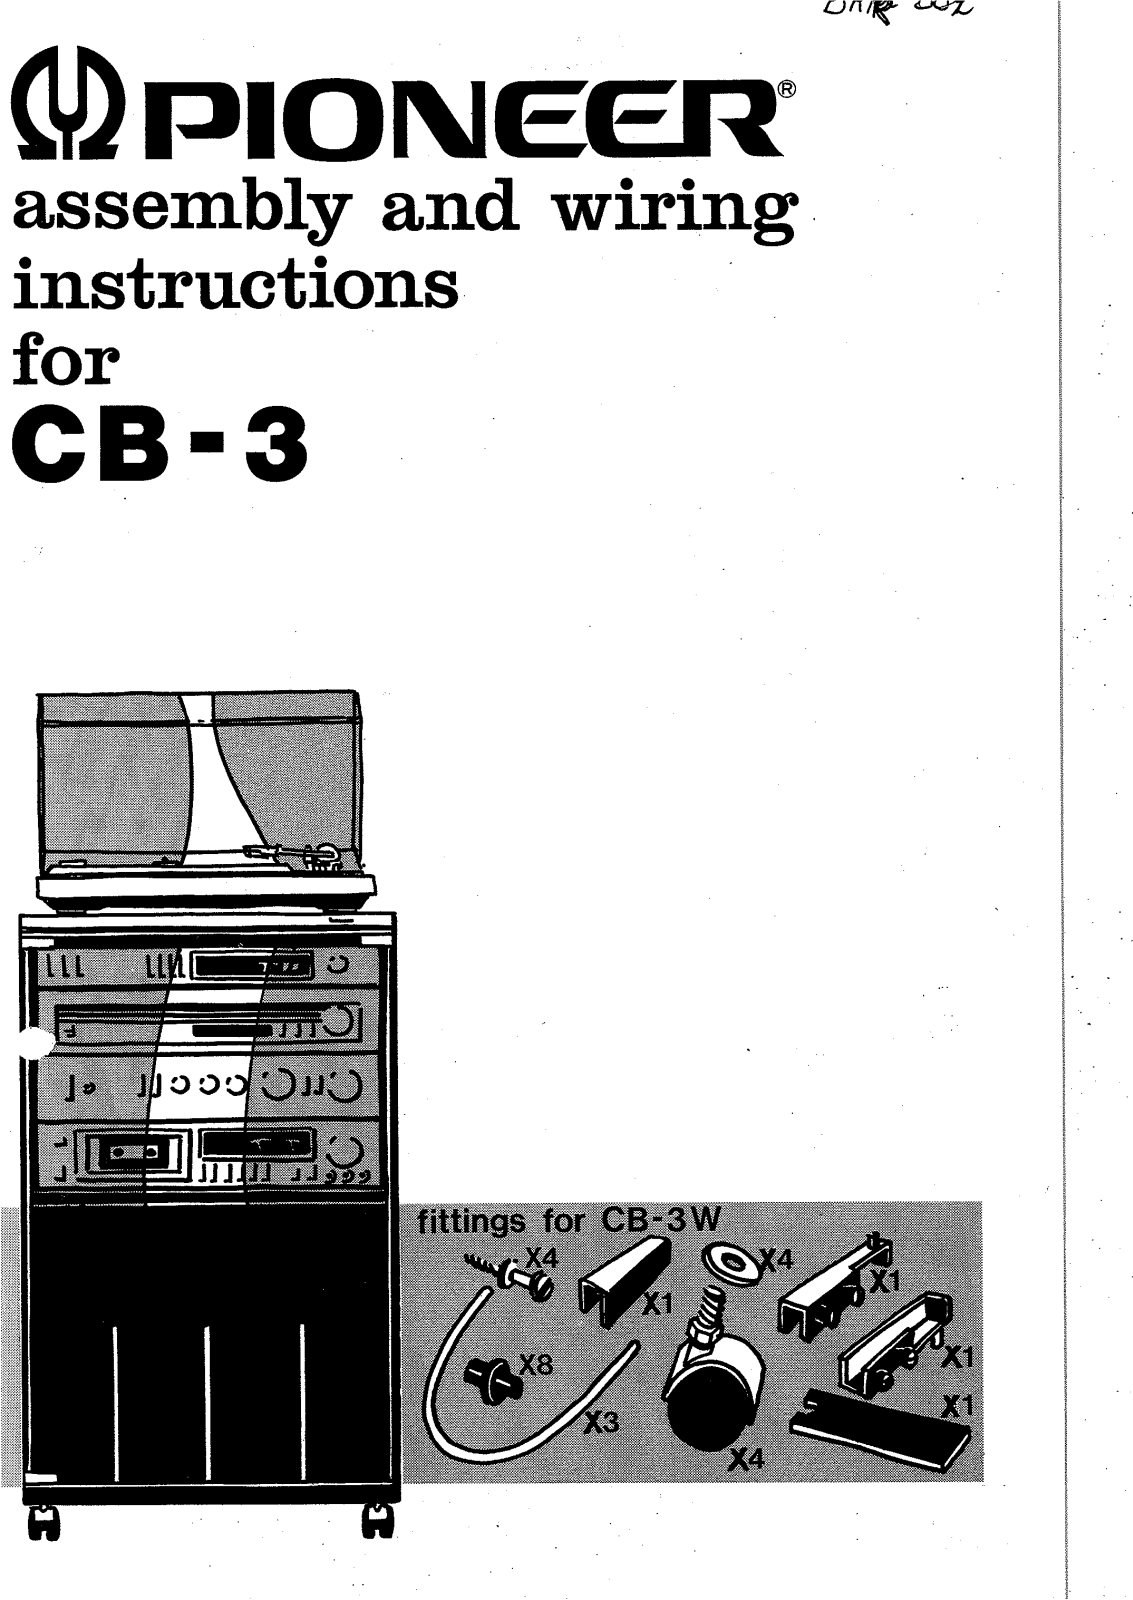 Pioneer CB-3 Owners manual